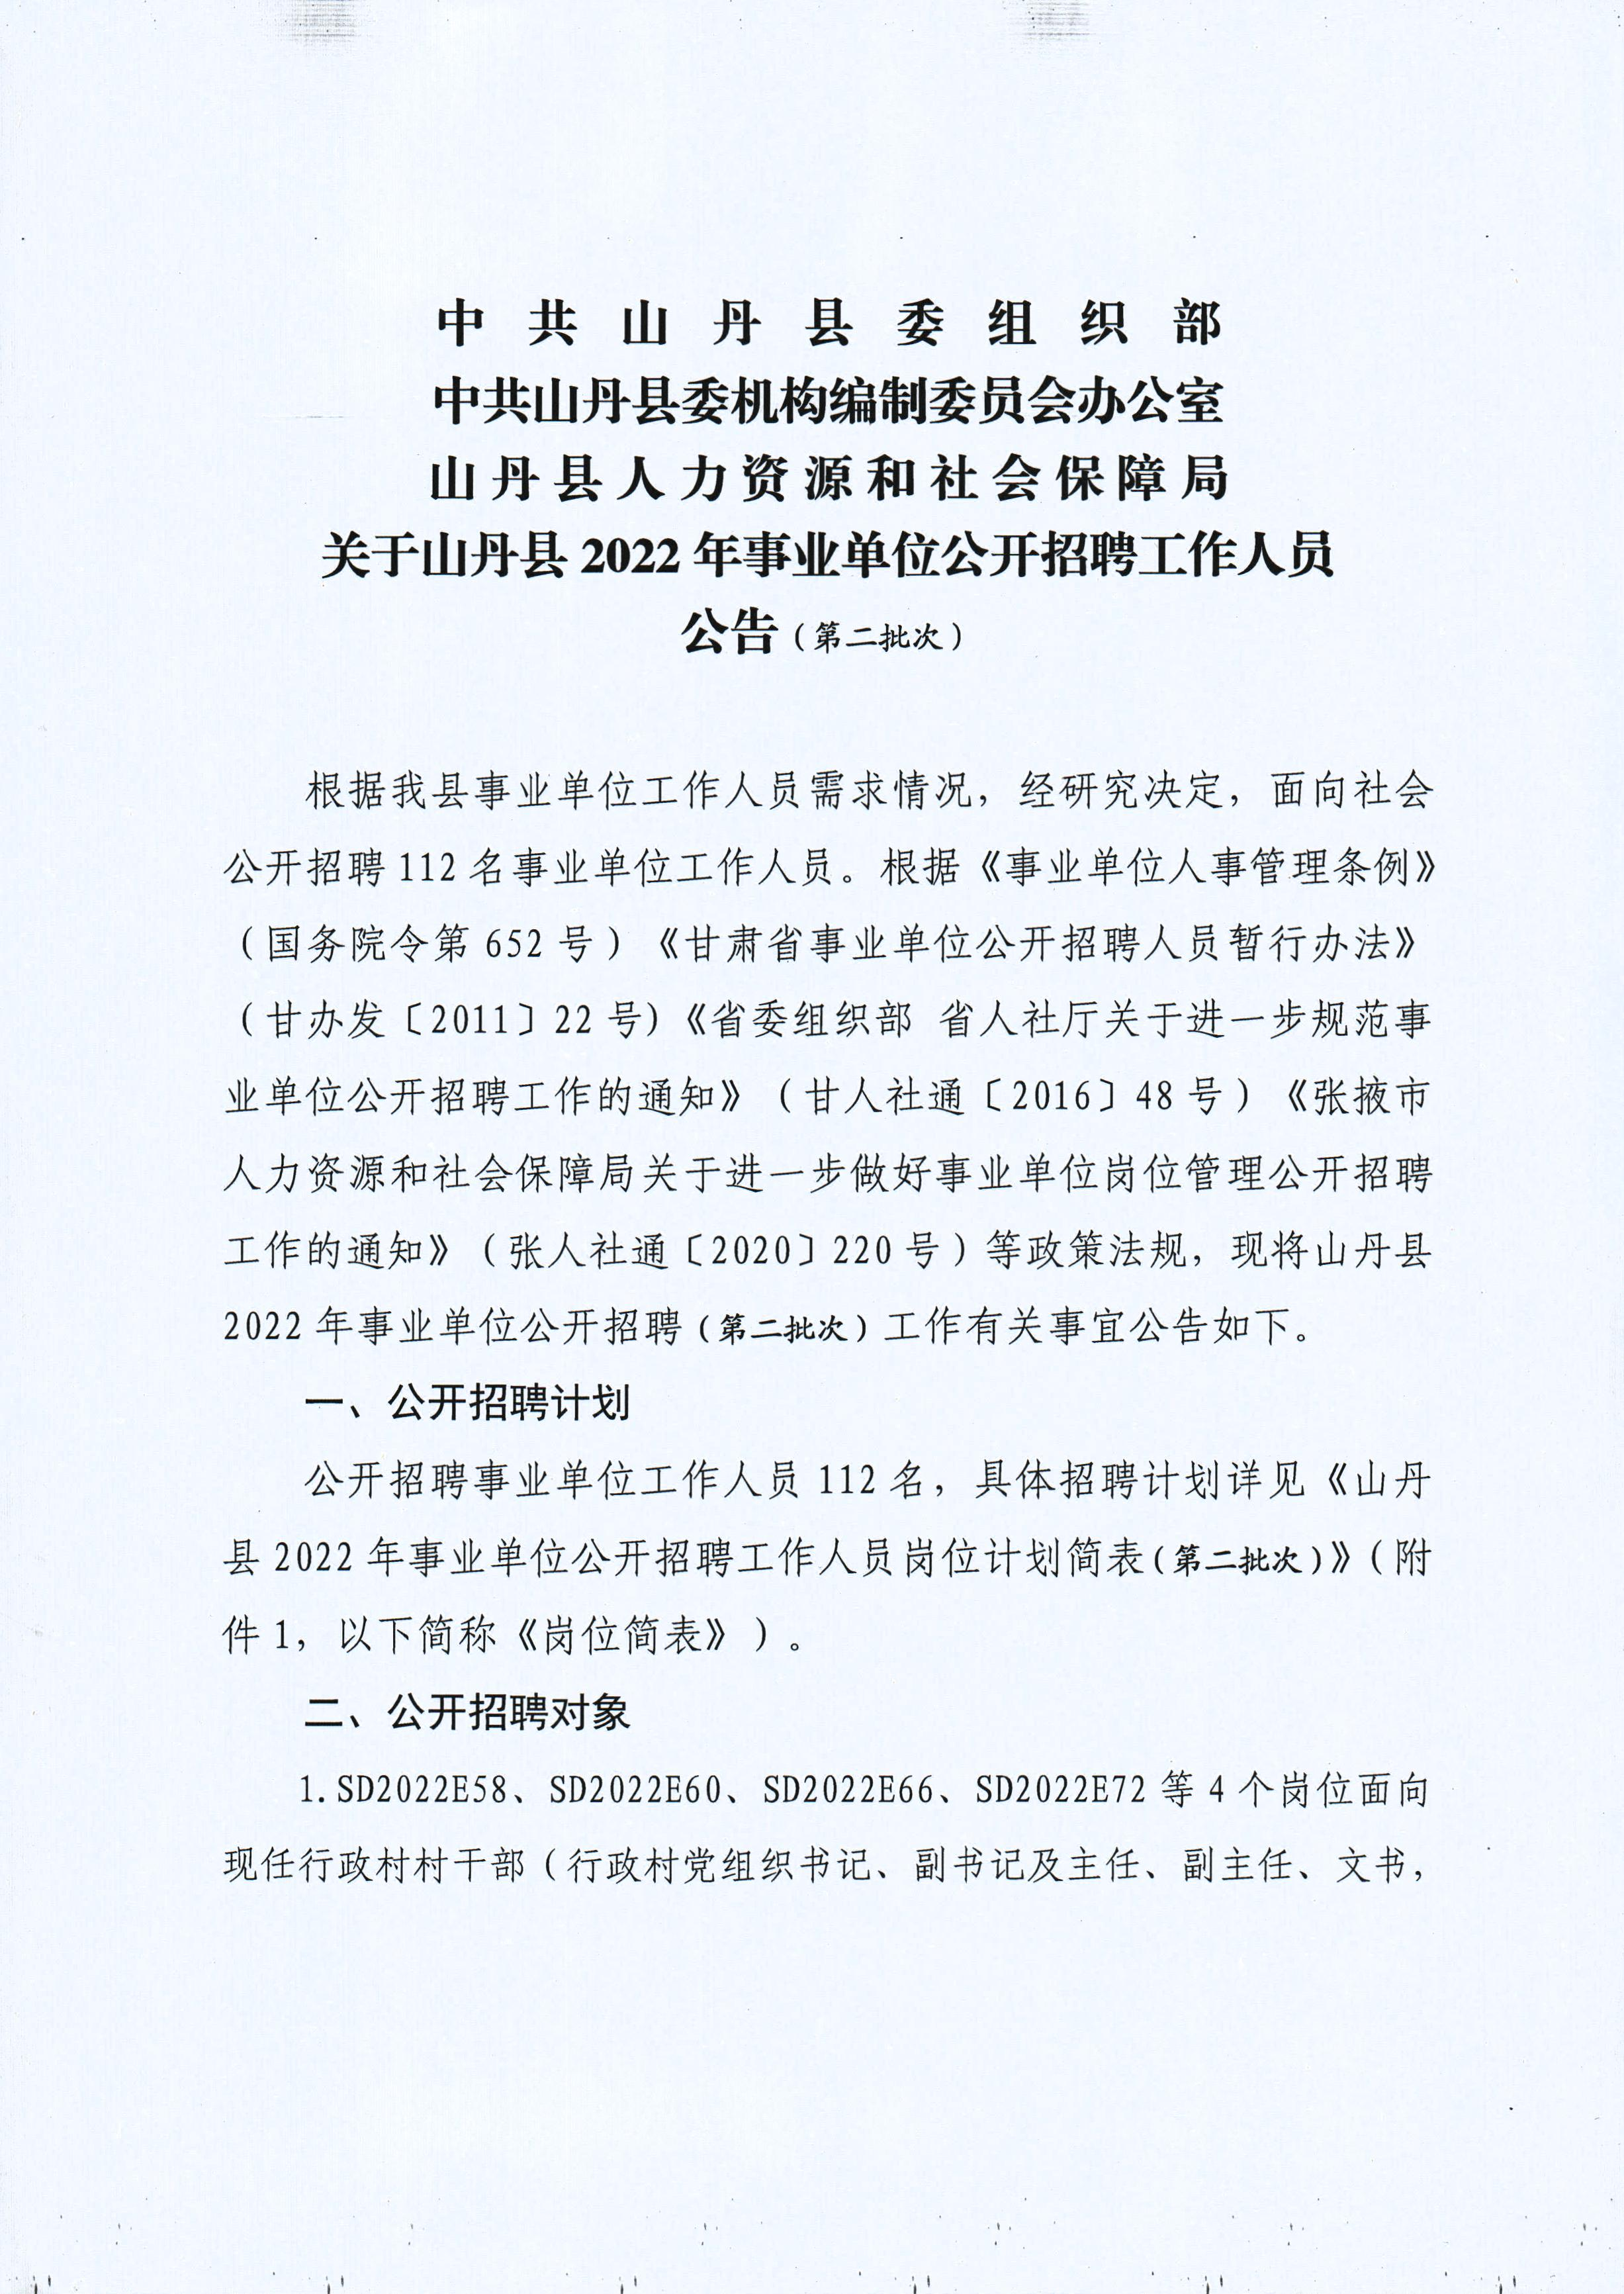 2022年甘肃张掖山丹县事业单位招聘112人公告（第二批）